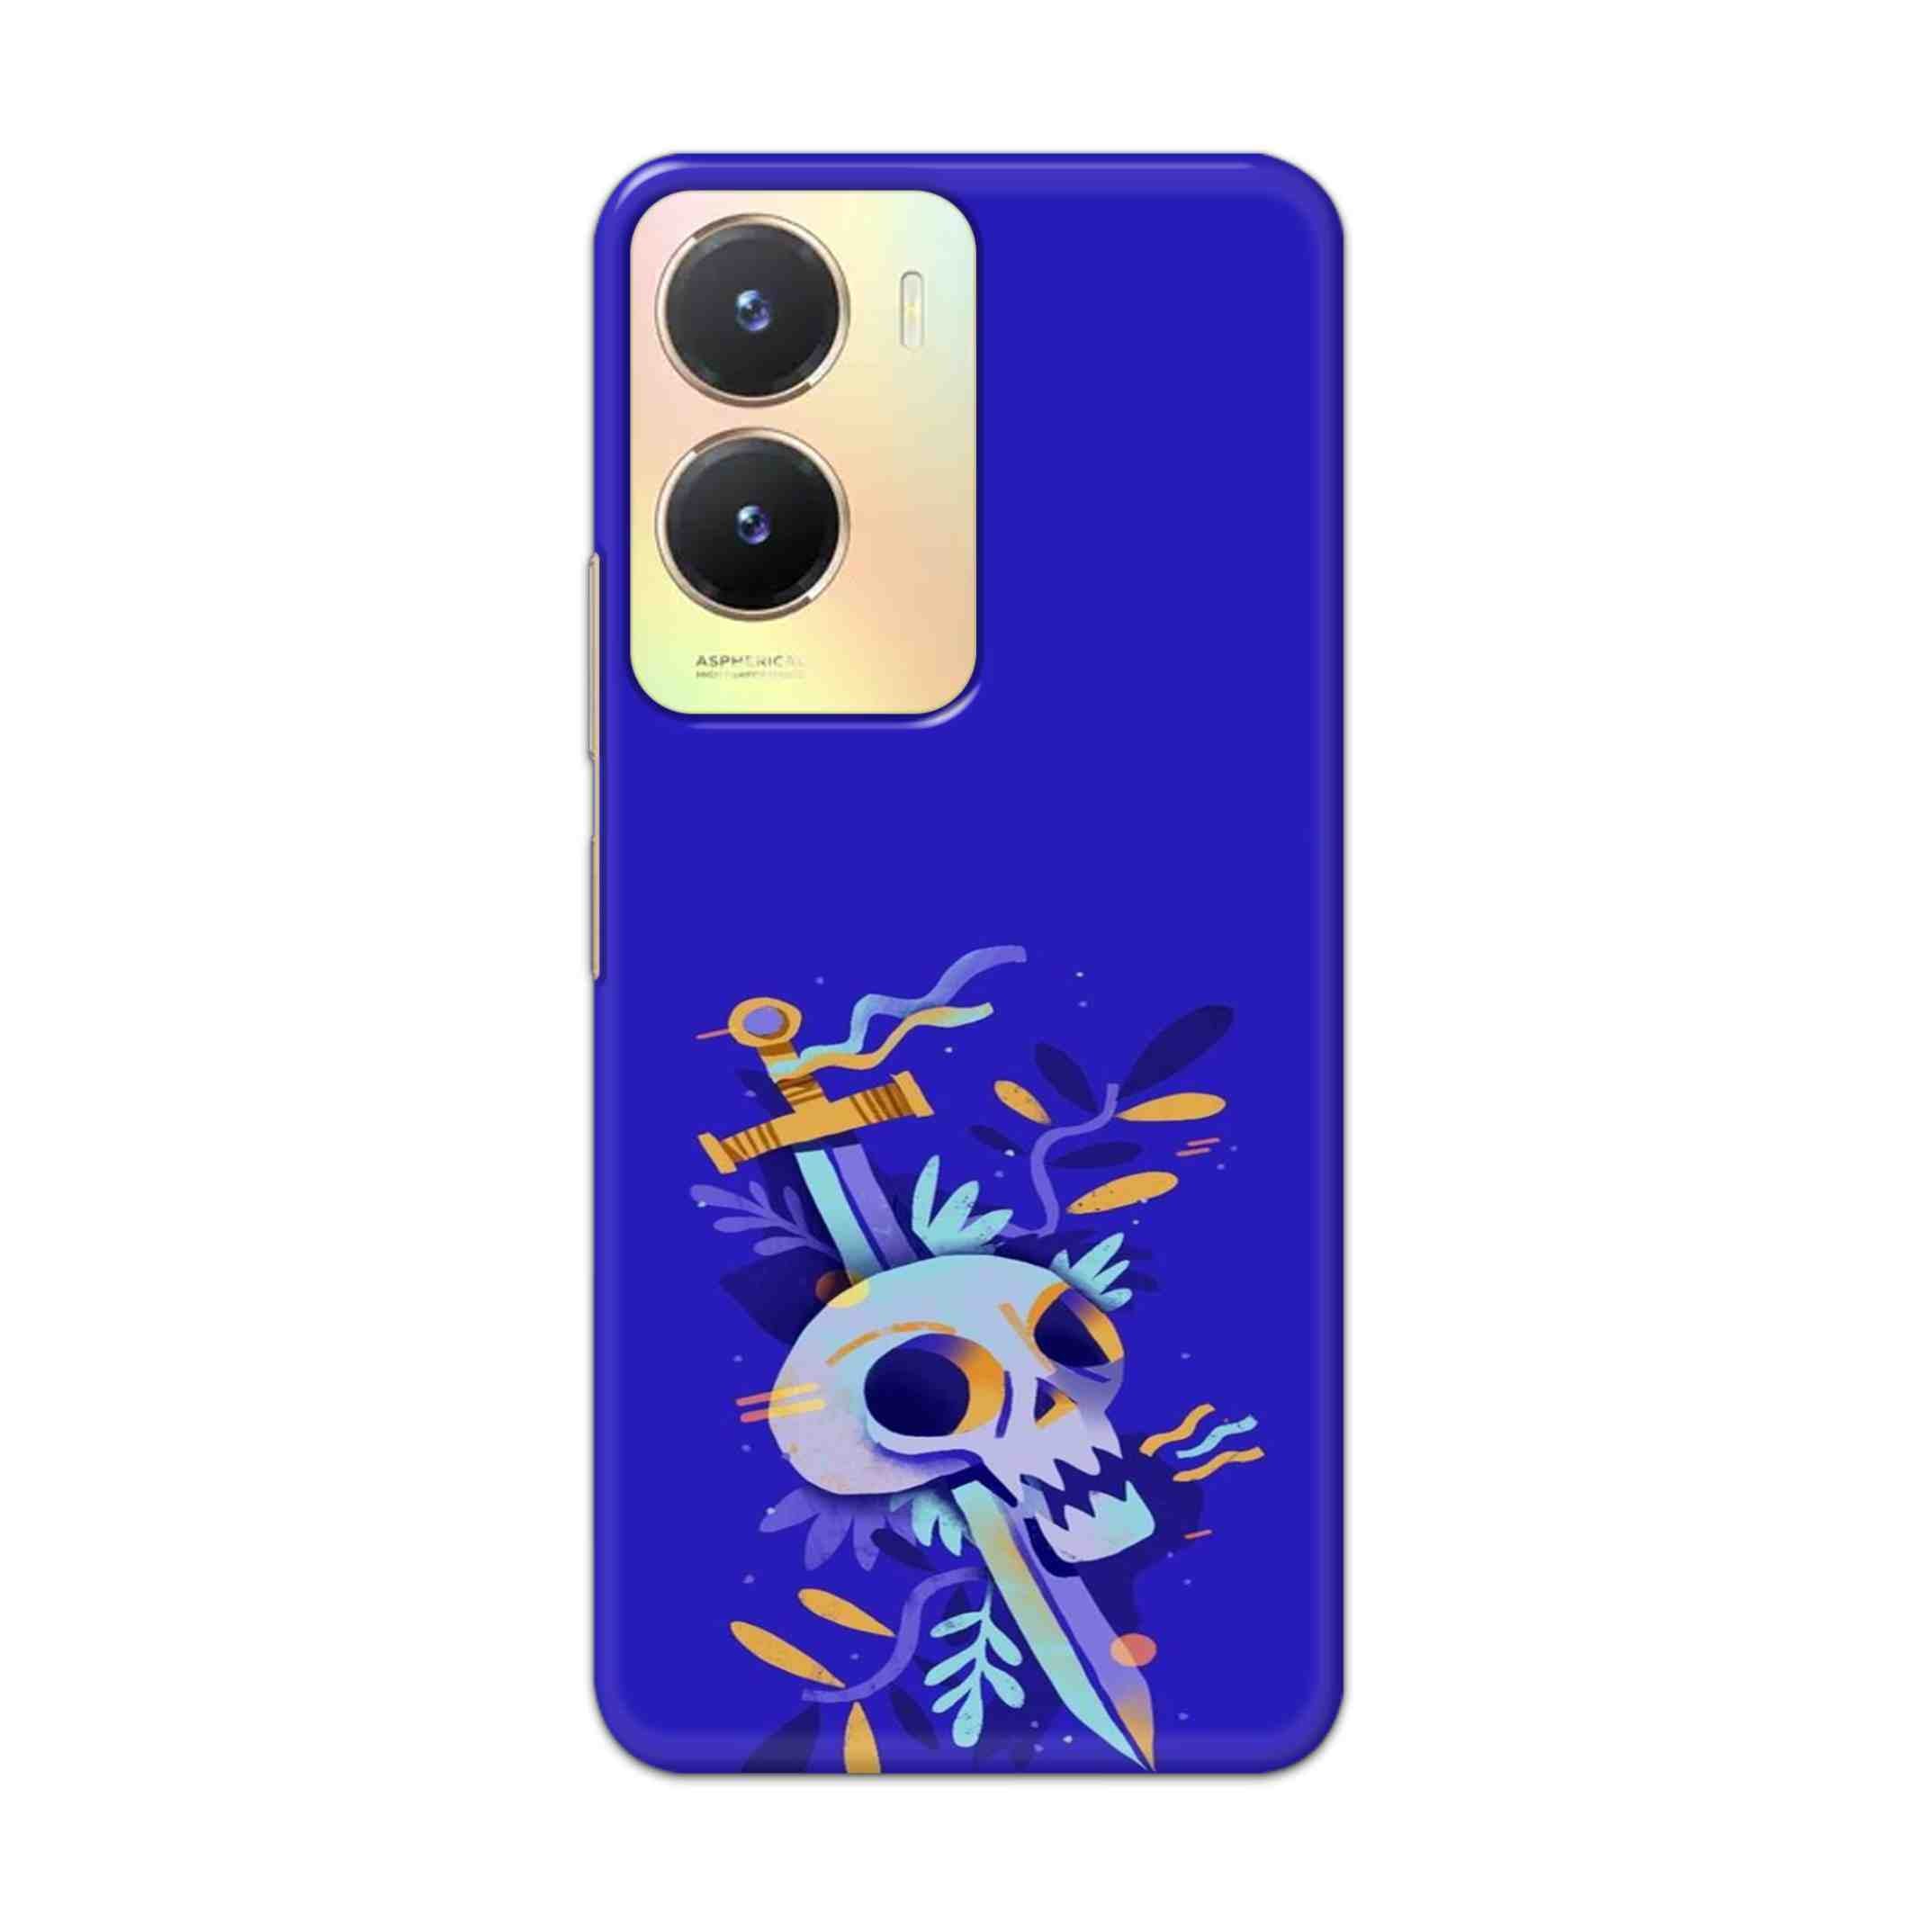 Buy Blue Skull Hard Back Mobile Phone Case Cover For Vivo T2x Online